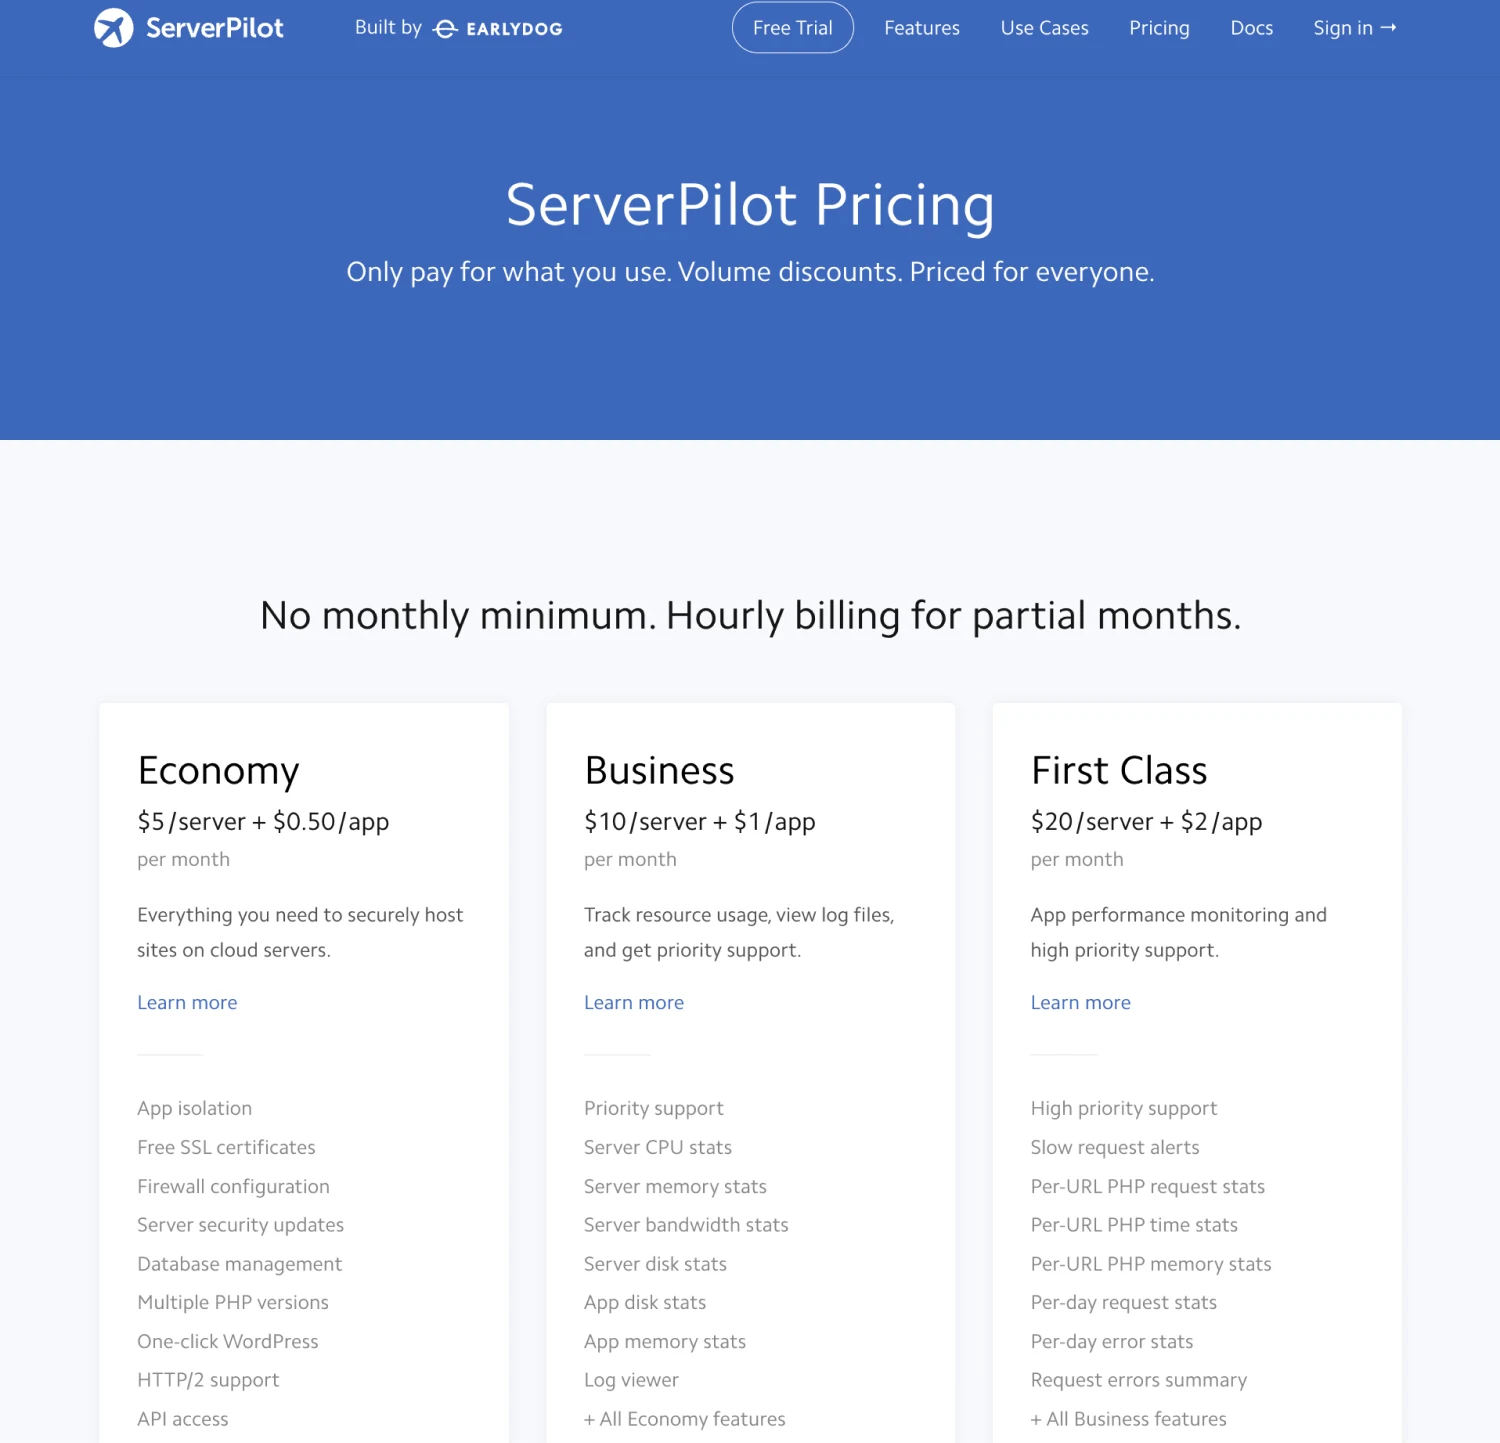 Skema harga ServerPilot untuk managed hosting dengan layanan otomatis.